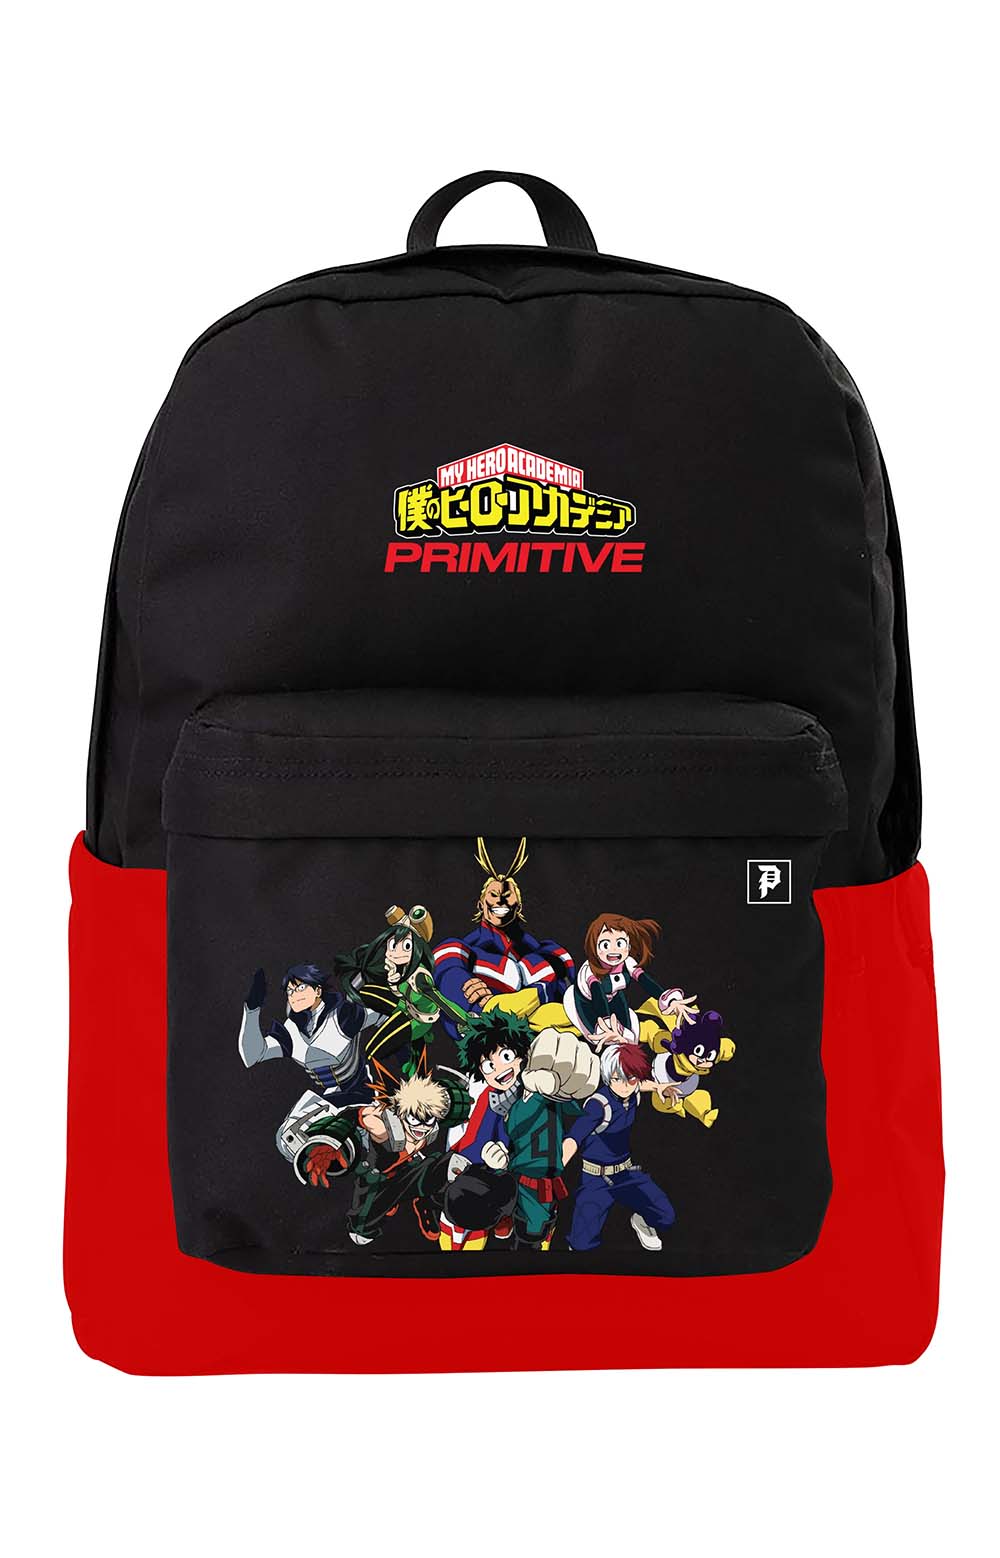 x My Hero Academia Backpack